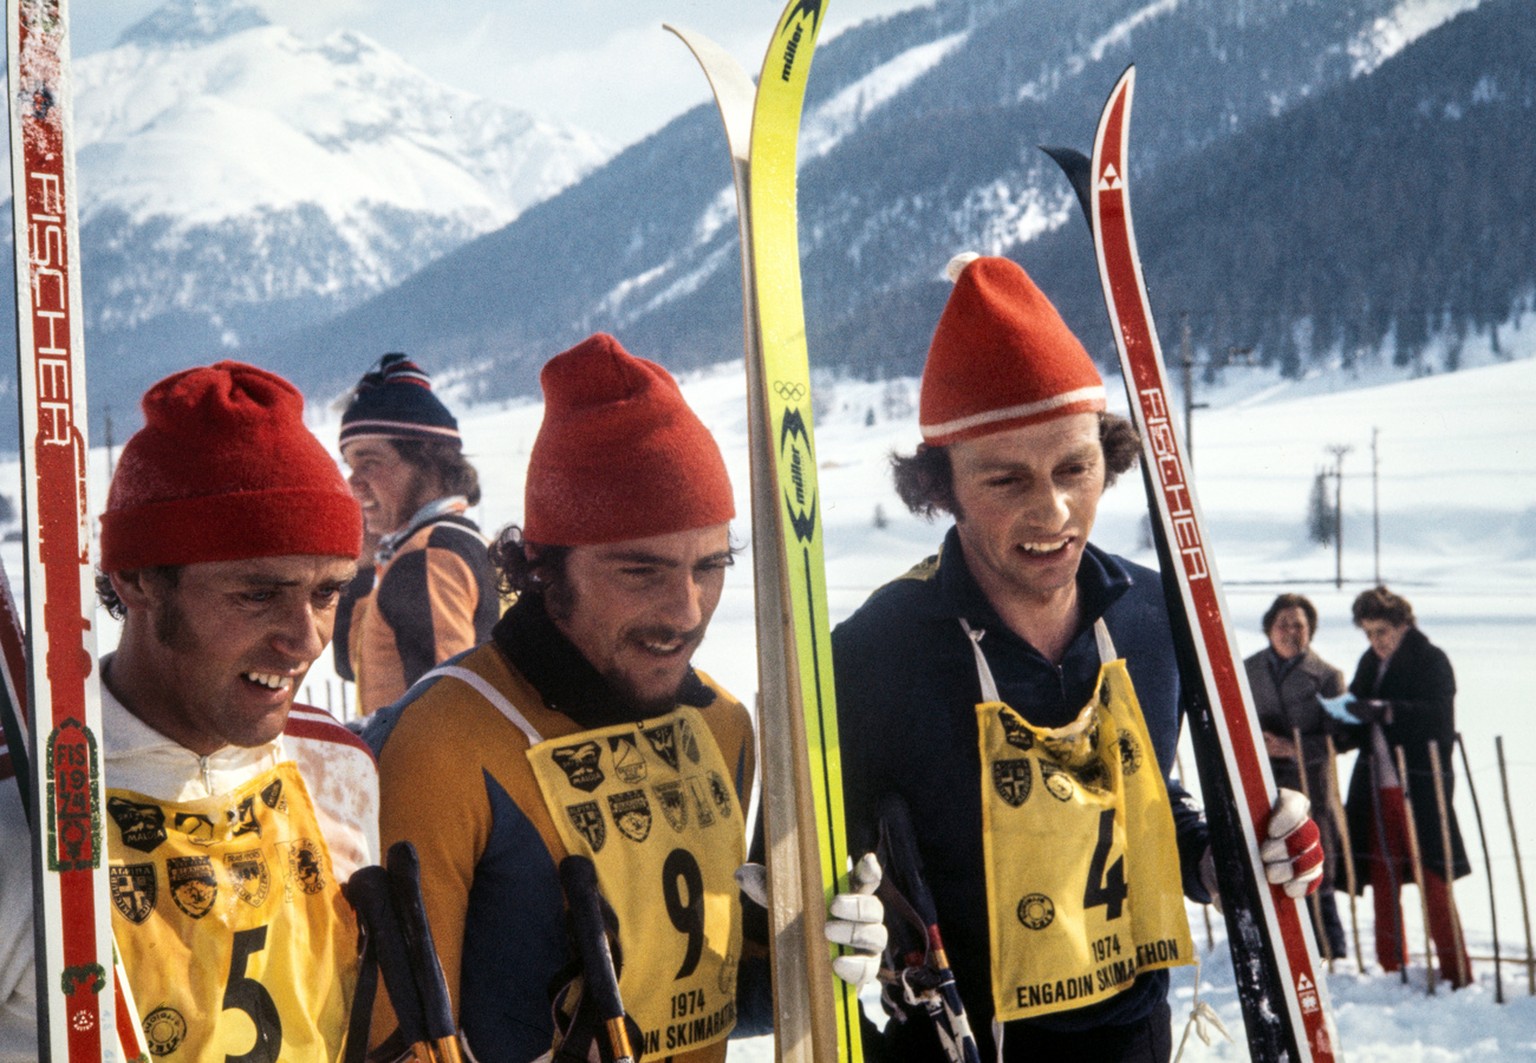 Alfred Kaelin, Mitte, gewinnt den 6. Engadin Skimarathon vor Alois &quot;Wisel&quot; Kaelin, links und Werner Geeser, rechts, aufgenommen am 10. Maerz 1974. (KEYSTONE/Str)